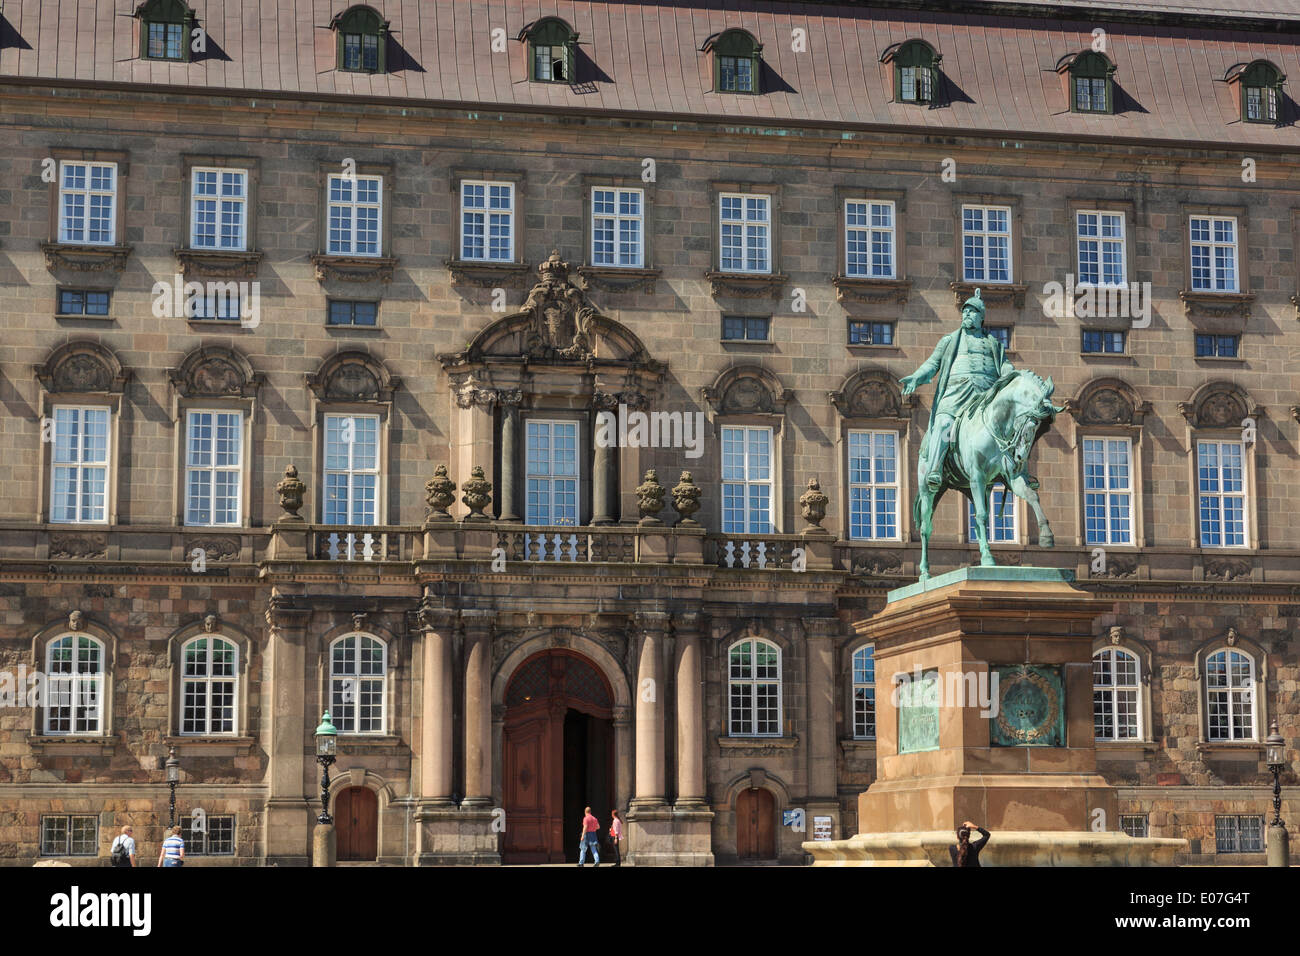 La estatua ecuestre del rey Federico VII fuera de Christiansborg Palace en la isla de Slotsholmen / Castillo de Selandia Dinamarca Copenhague Foto de stock